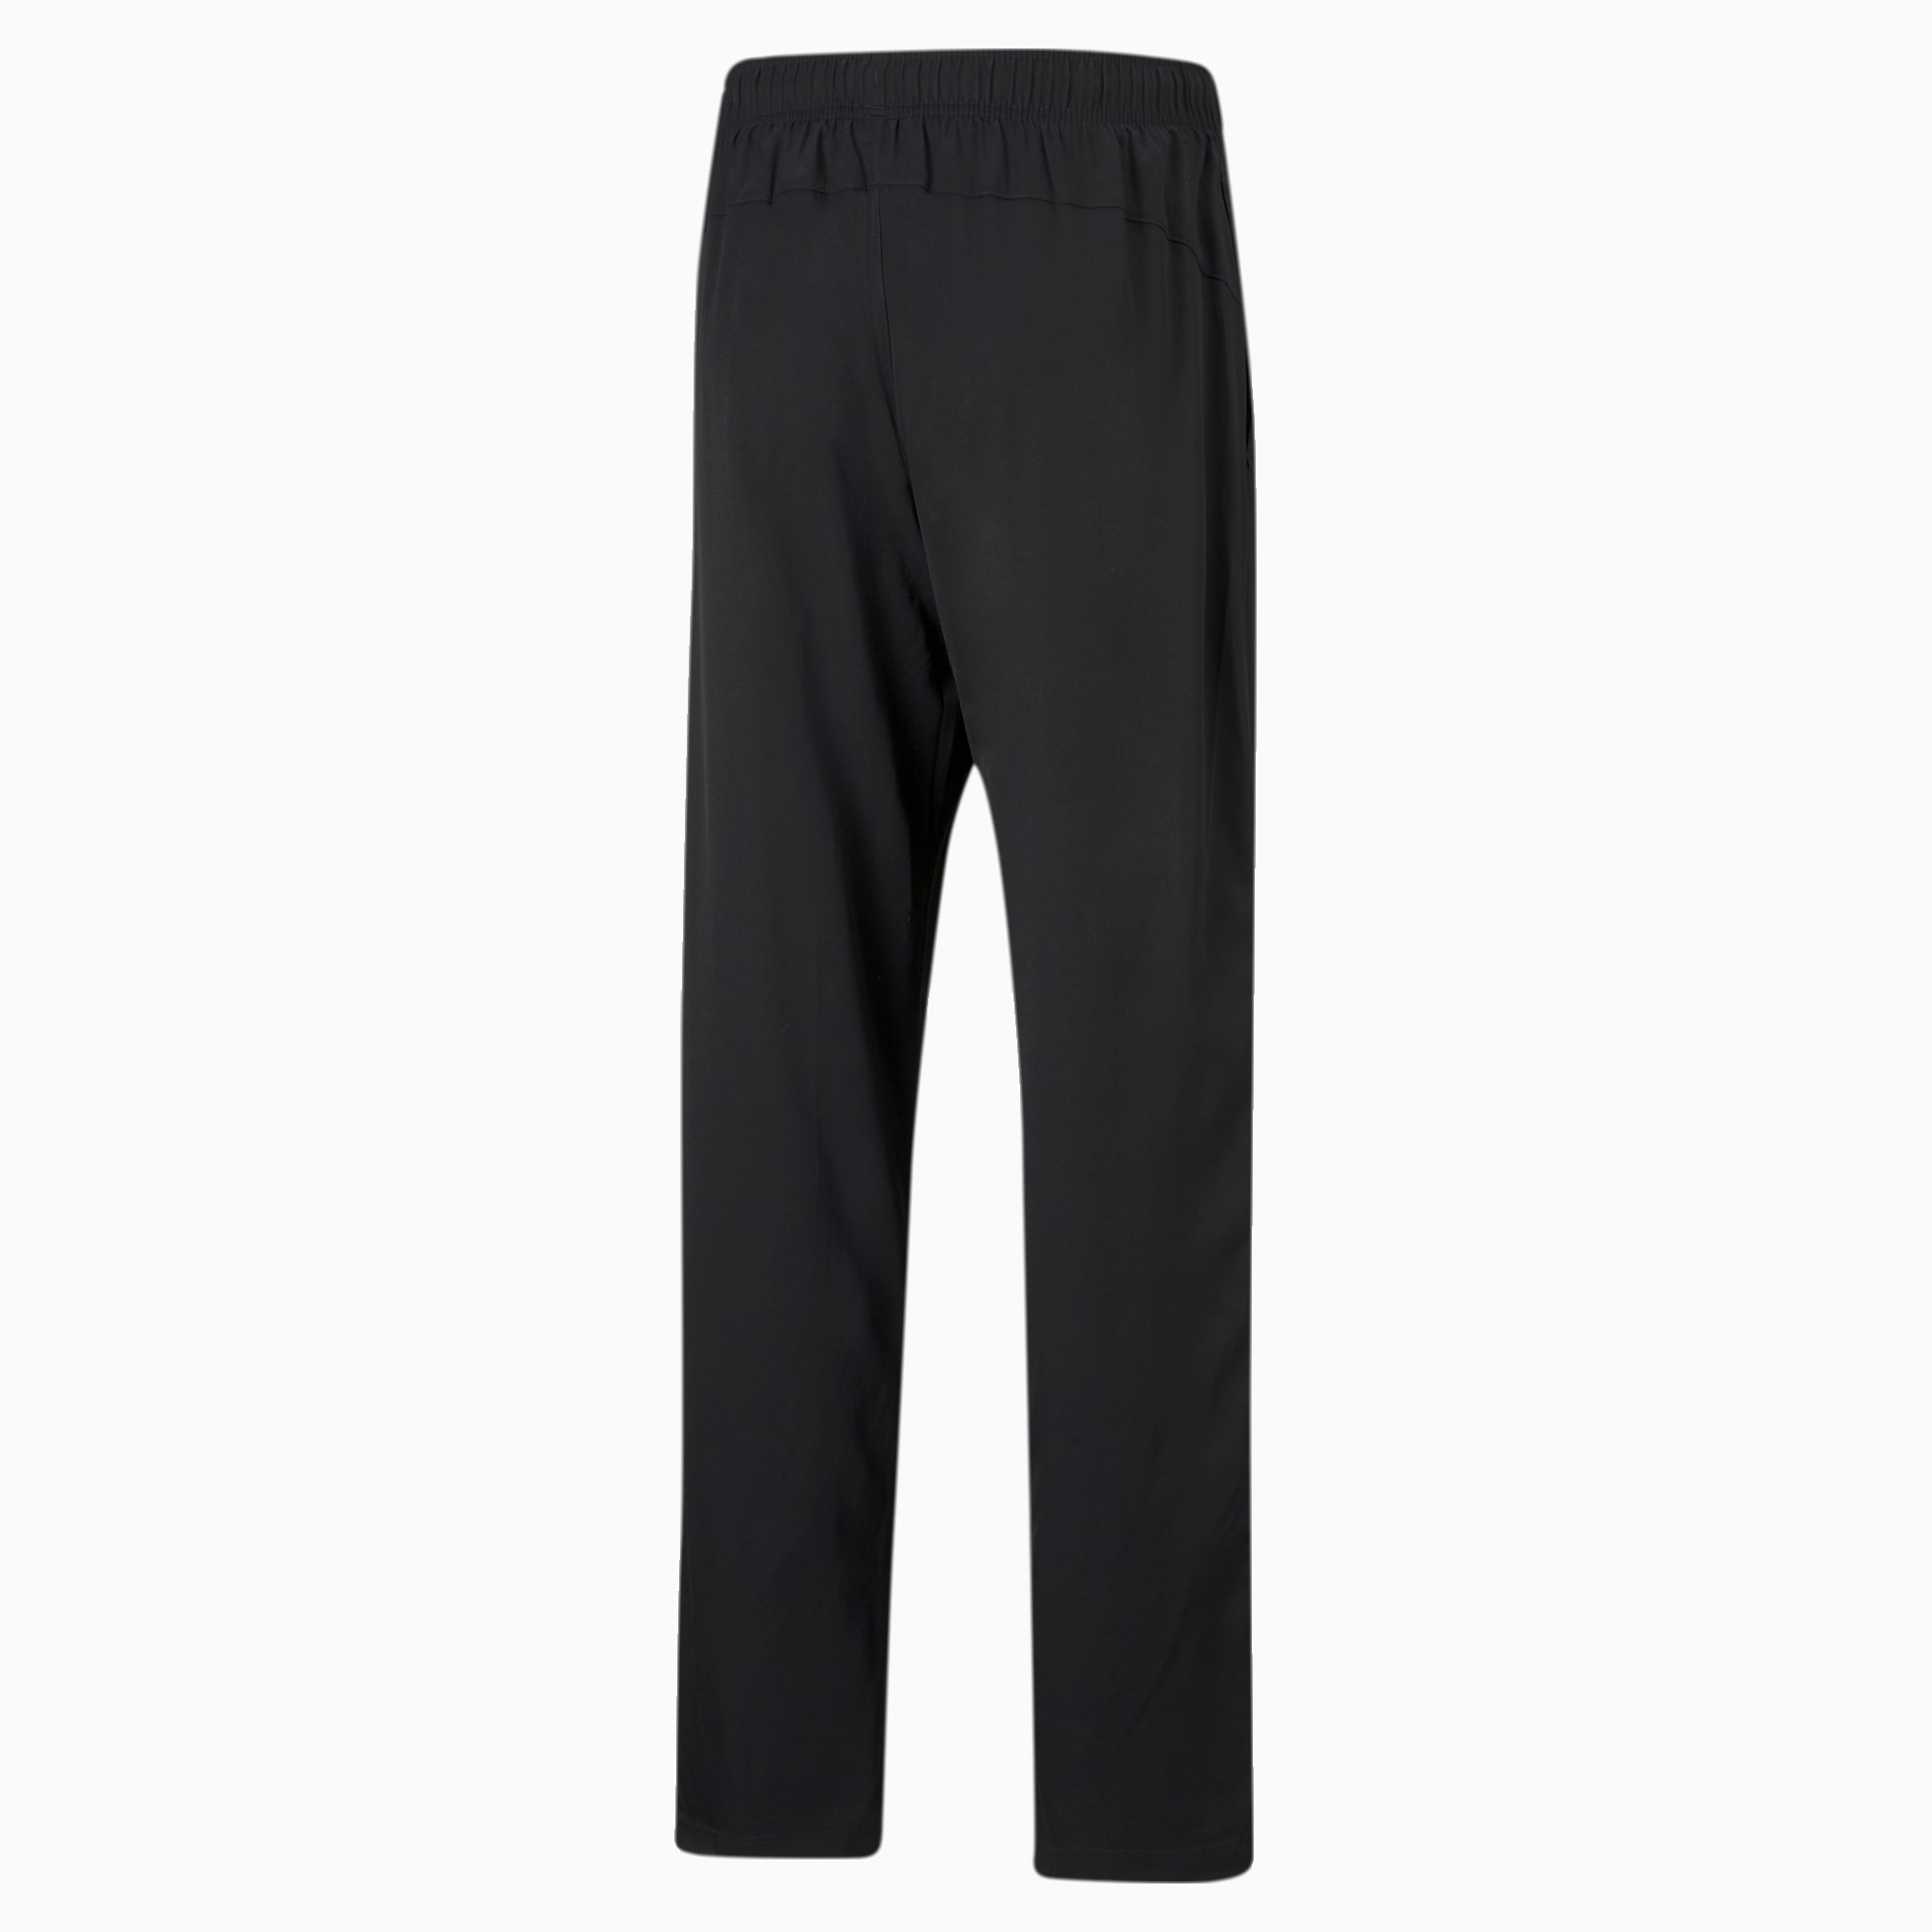 PUMA Active Woven Men's Sweatpants, Black, Size S, Clothing